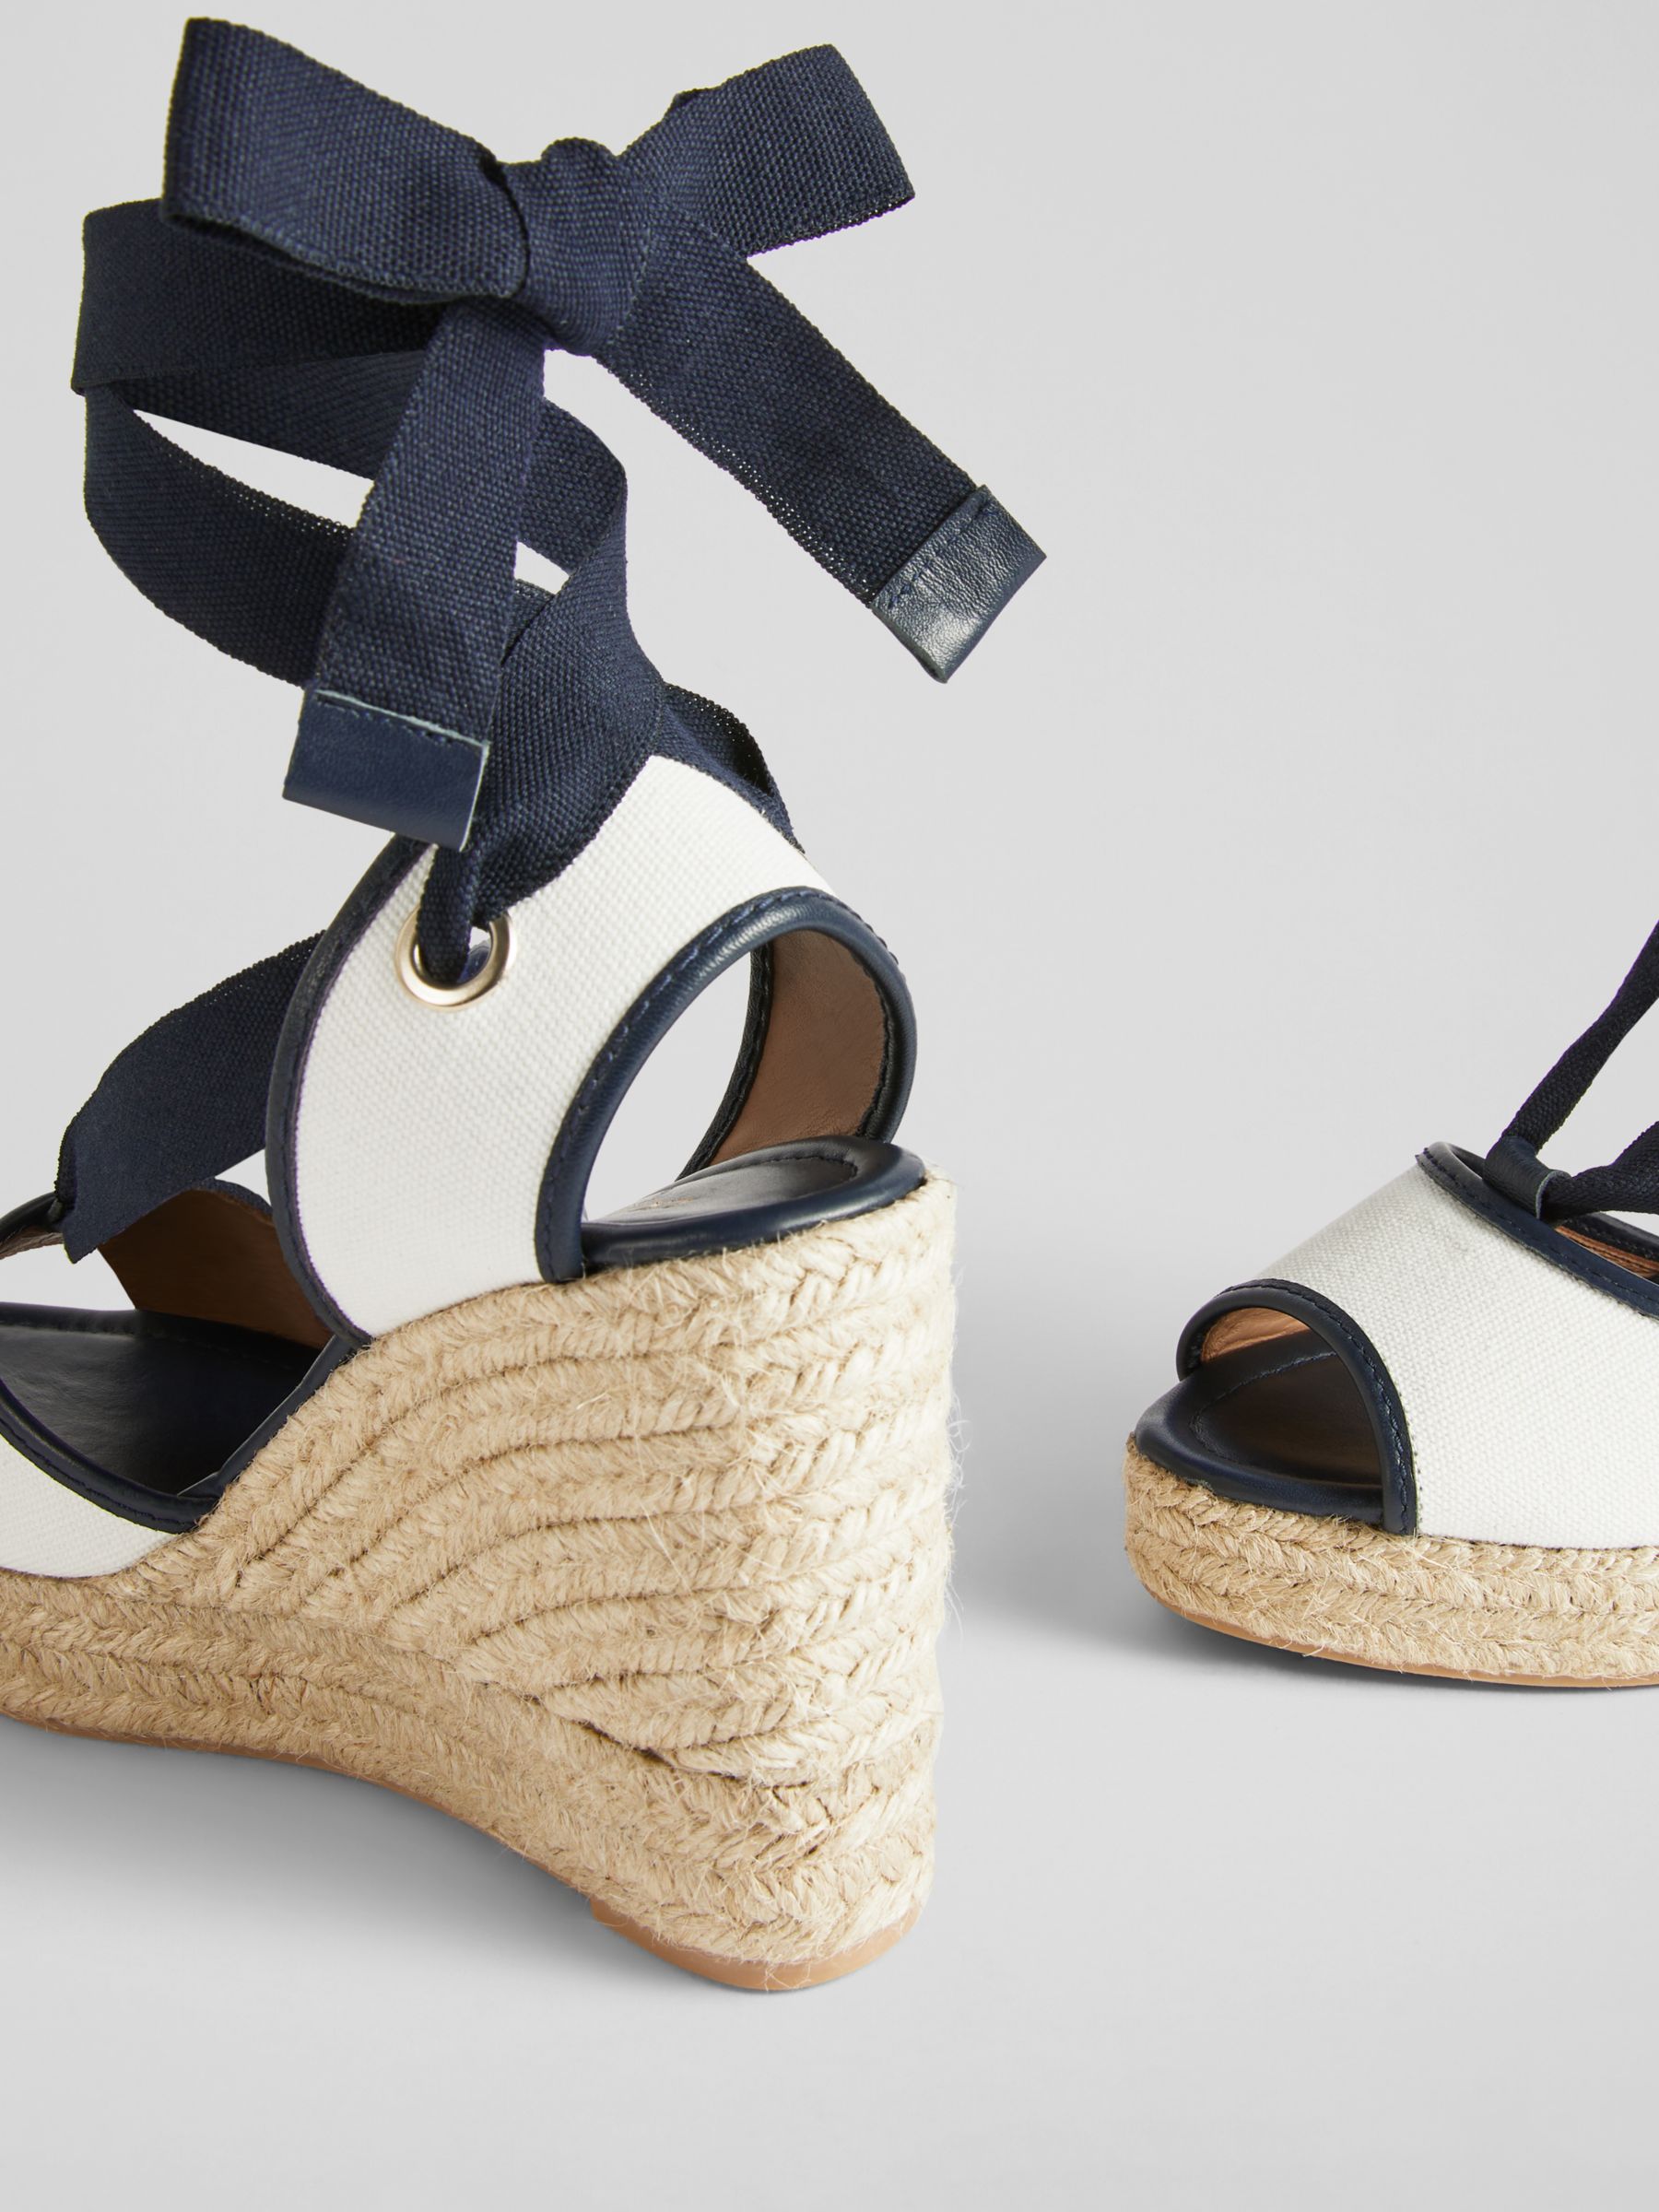 L.K.Bennett Chiara Espadrille Wedge Sandals, Navy/Cream, 2